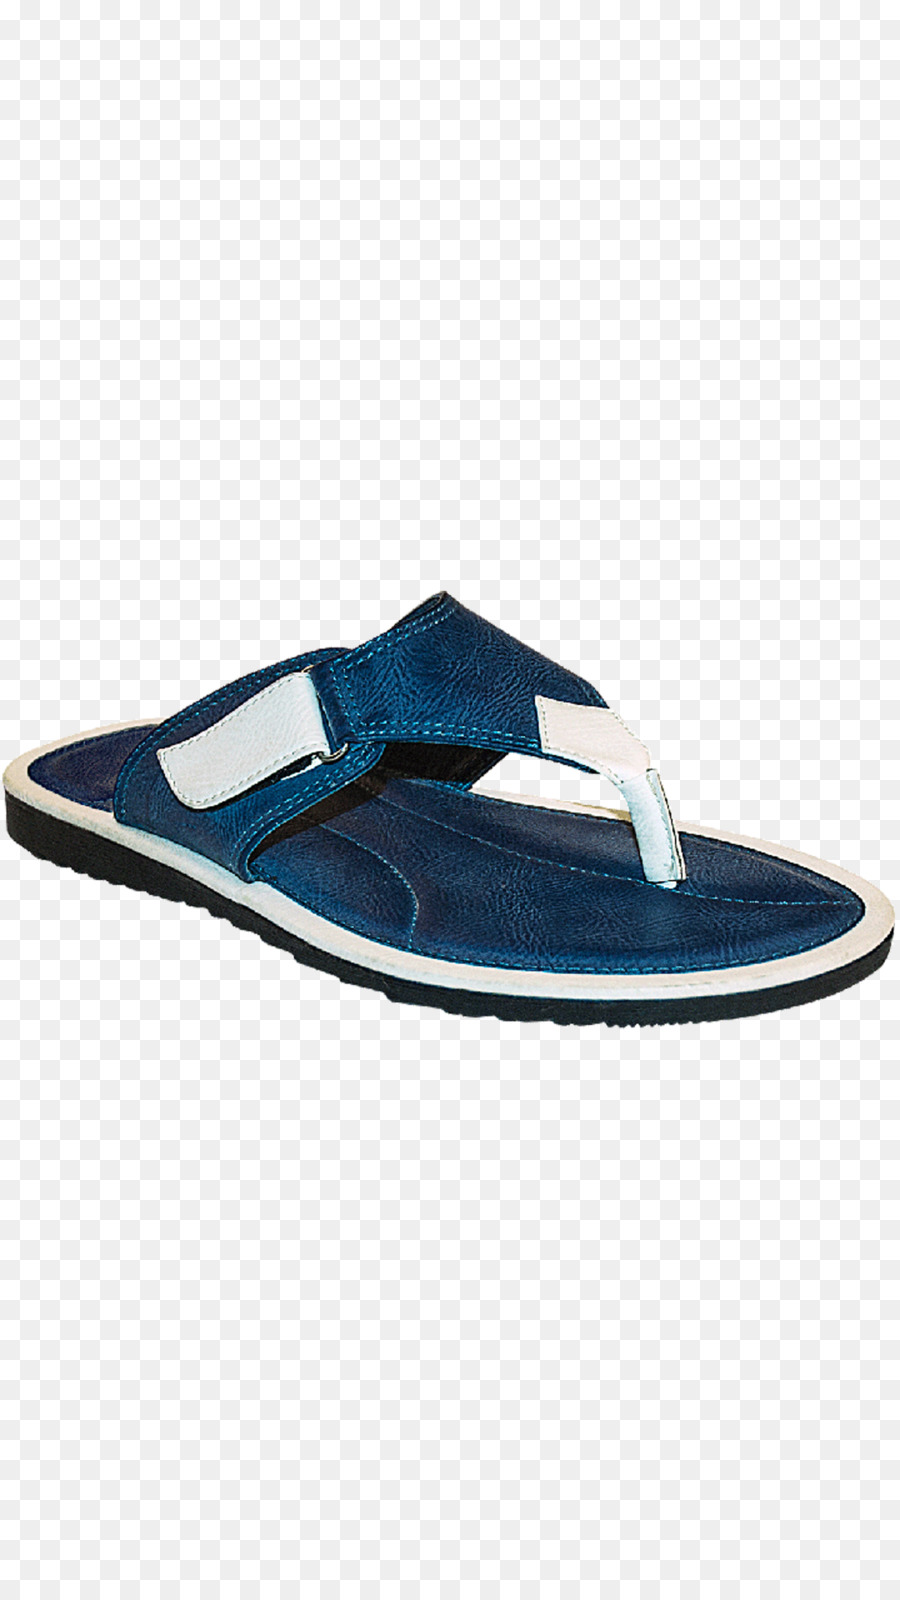 Flip-flops Slipper Schuh Sandale Turnschuhe - Sandale